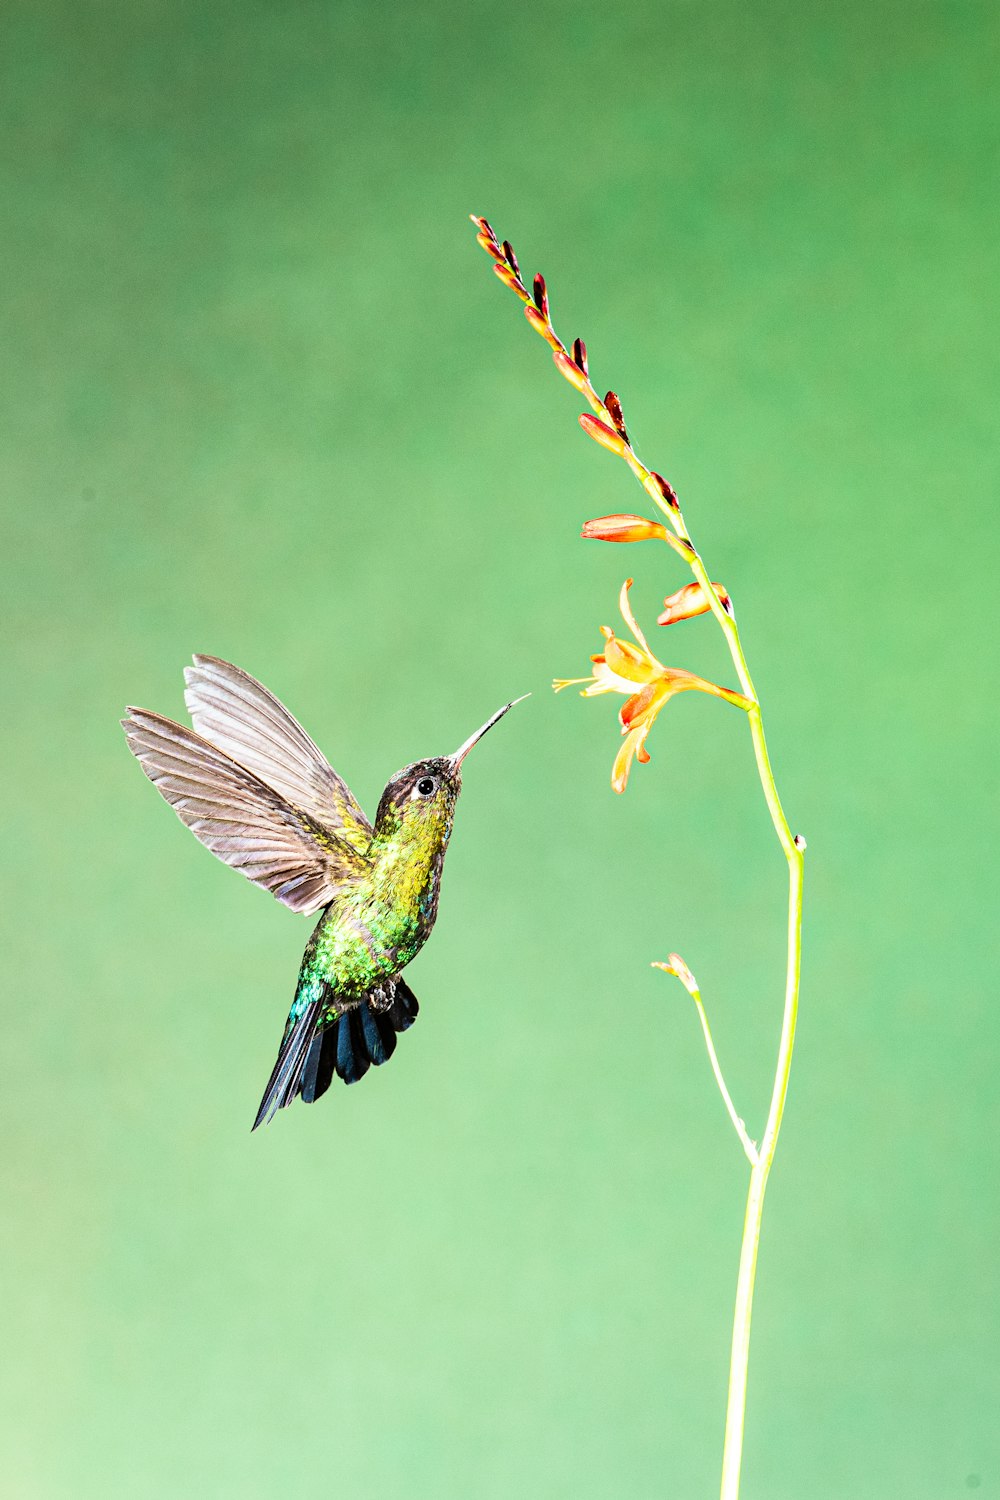 녹색 배경의 꽃을 향해 날아가는 벌새